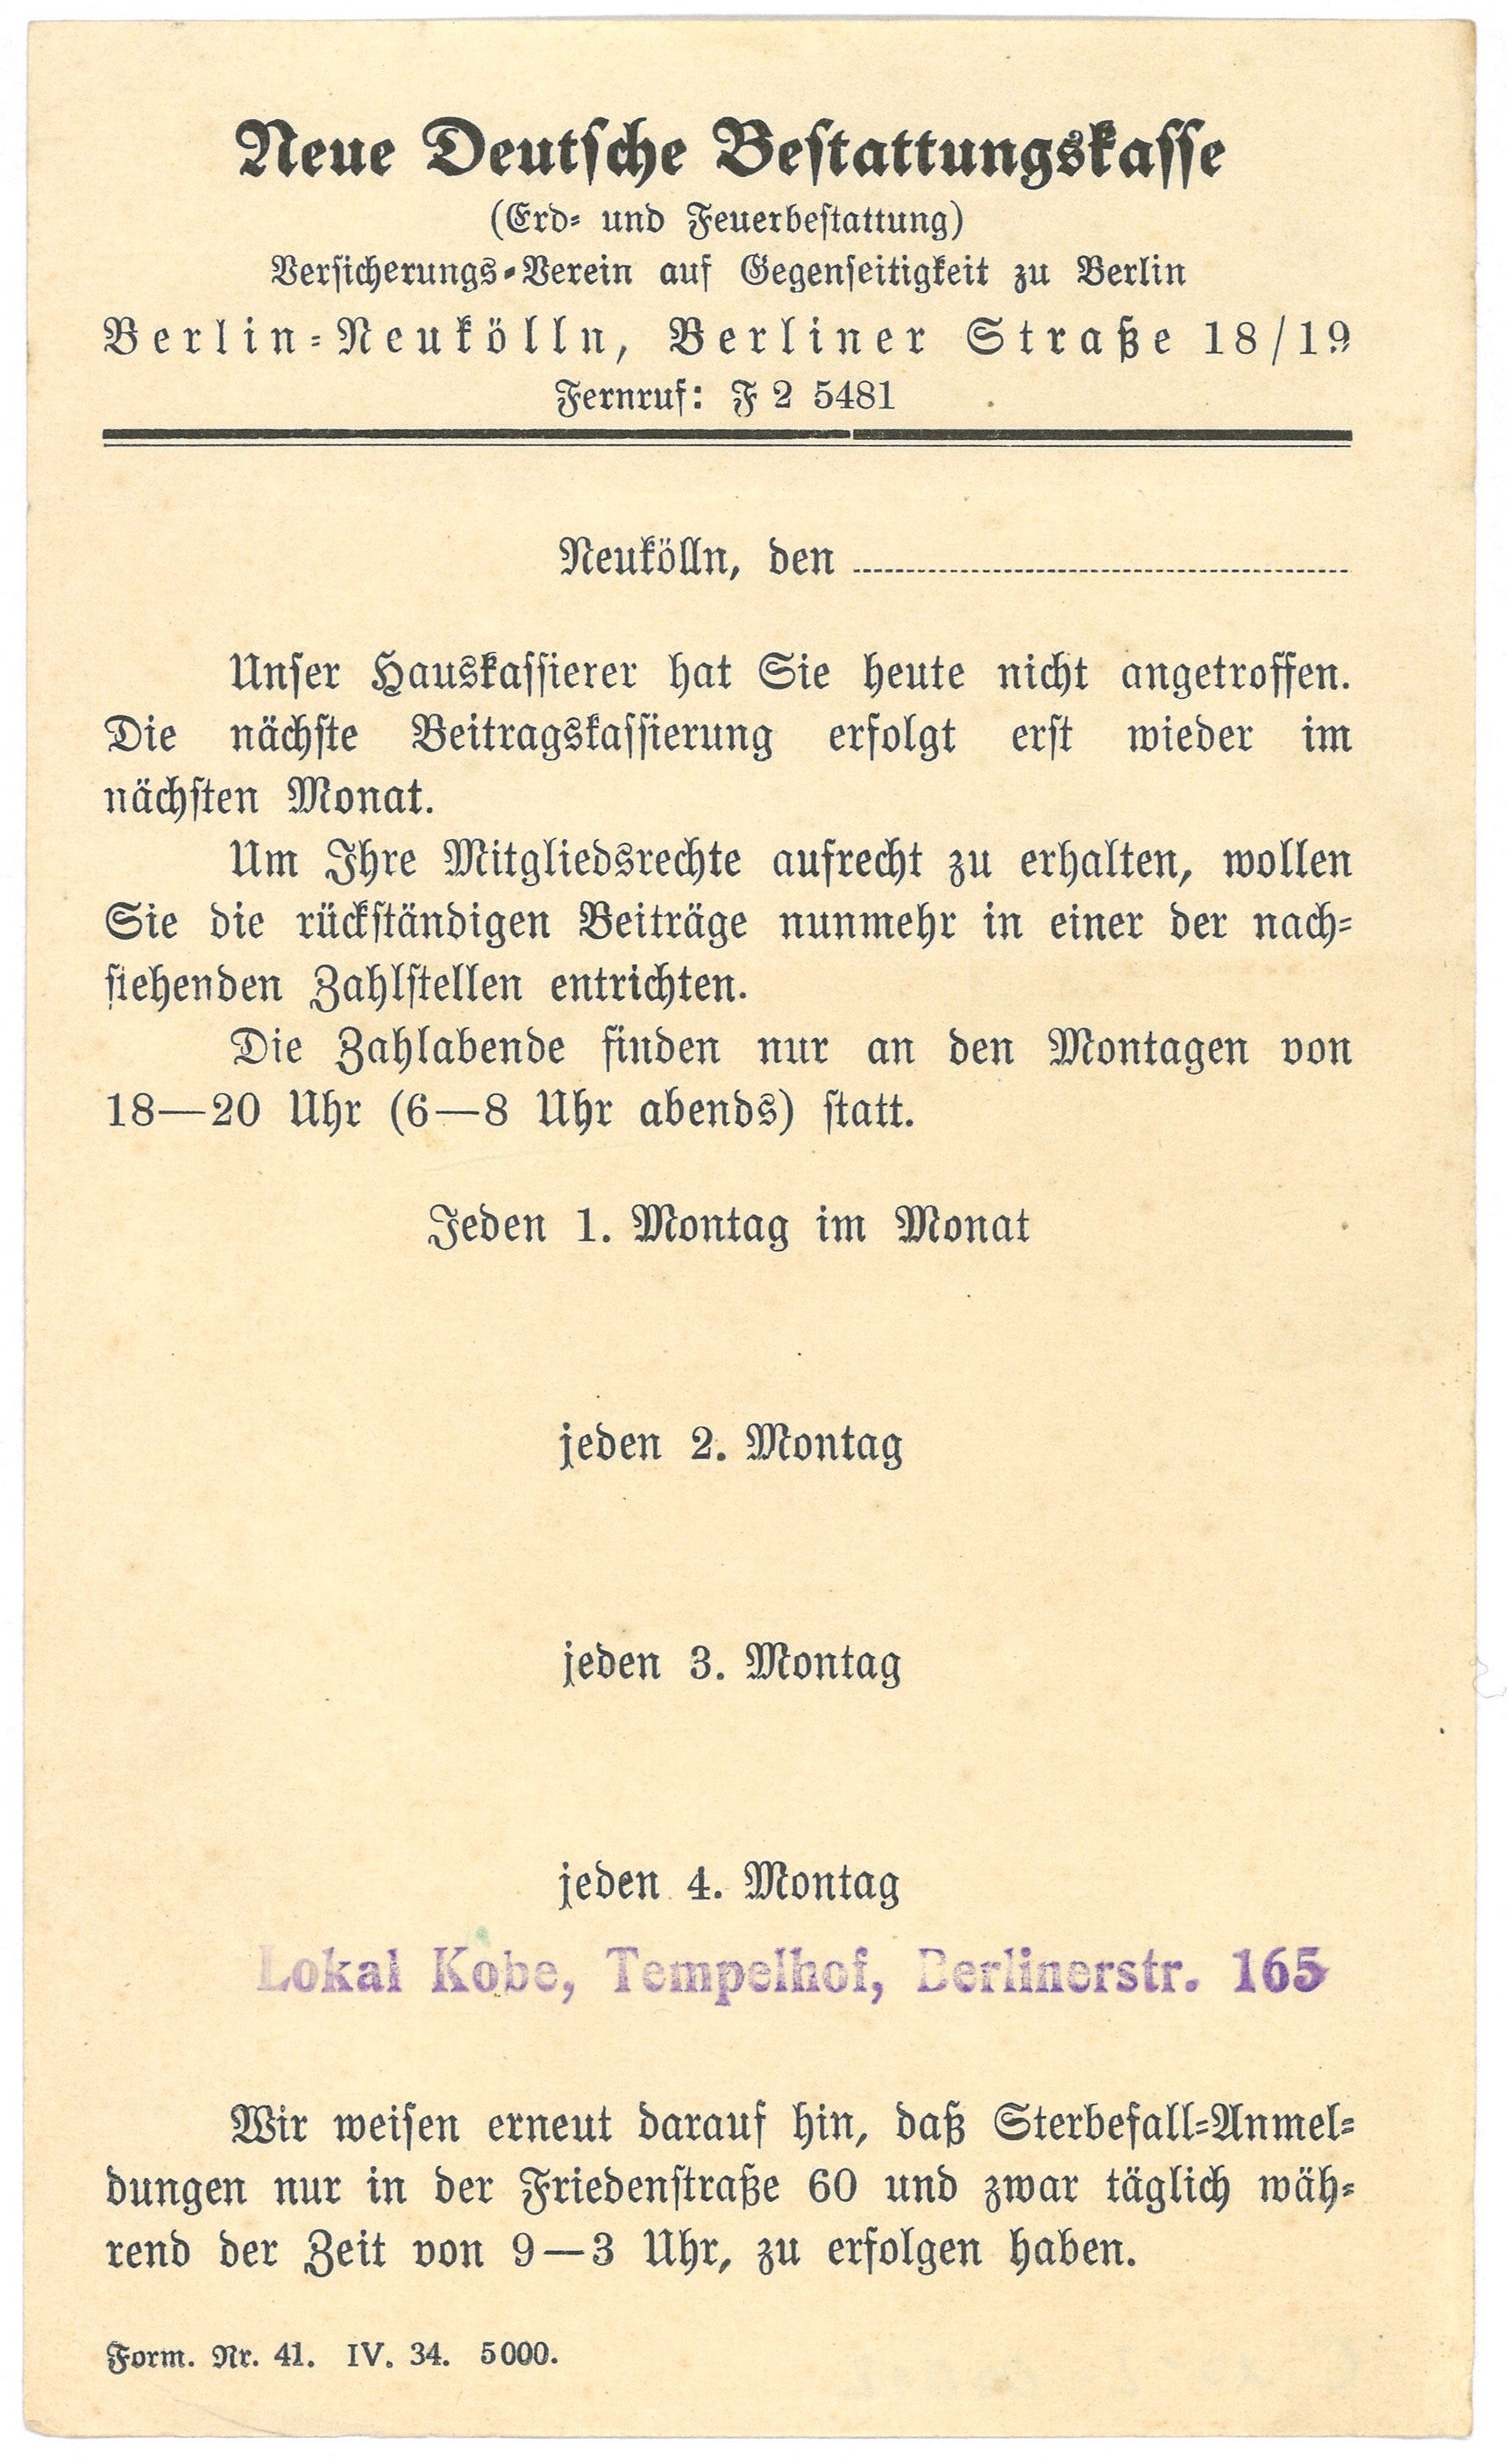 Formular der Neuen Deutschen Bestattungskasse in Berlin-Neukölln für Beitragsmahnung (1934) (Landesgeschichtliche Vereinigung für die Mark Brandenburg e.V., Archiv CC BY)